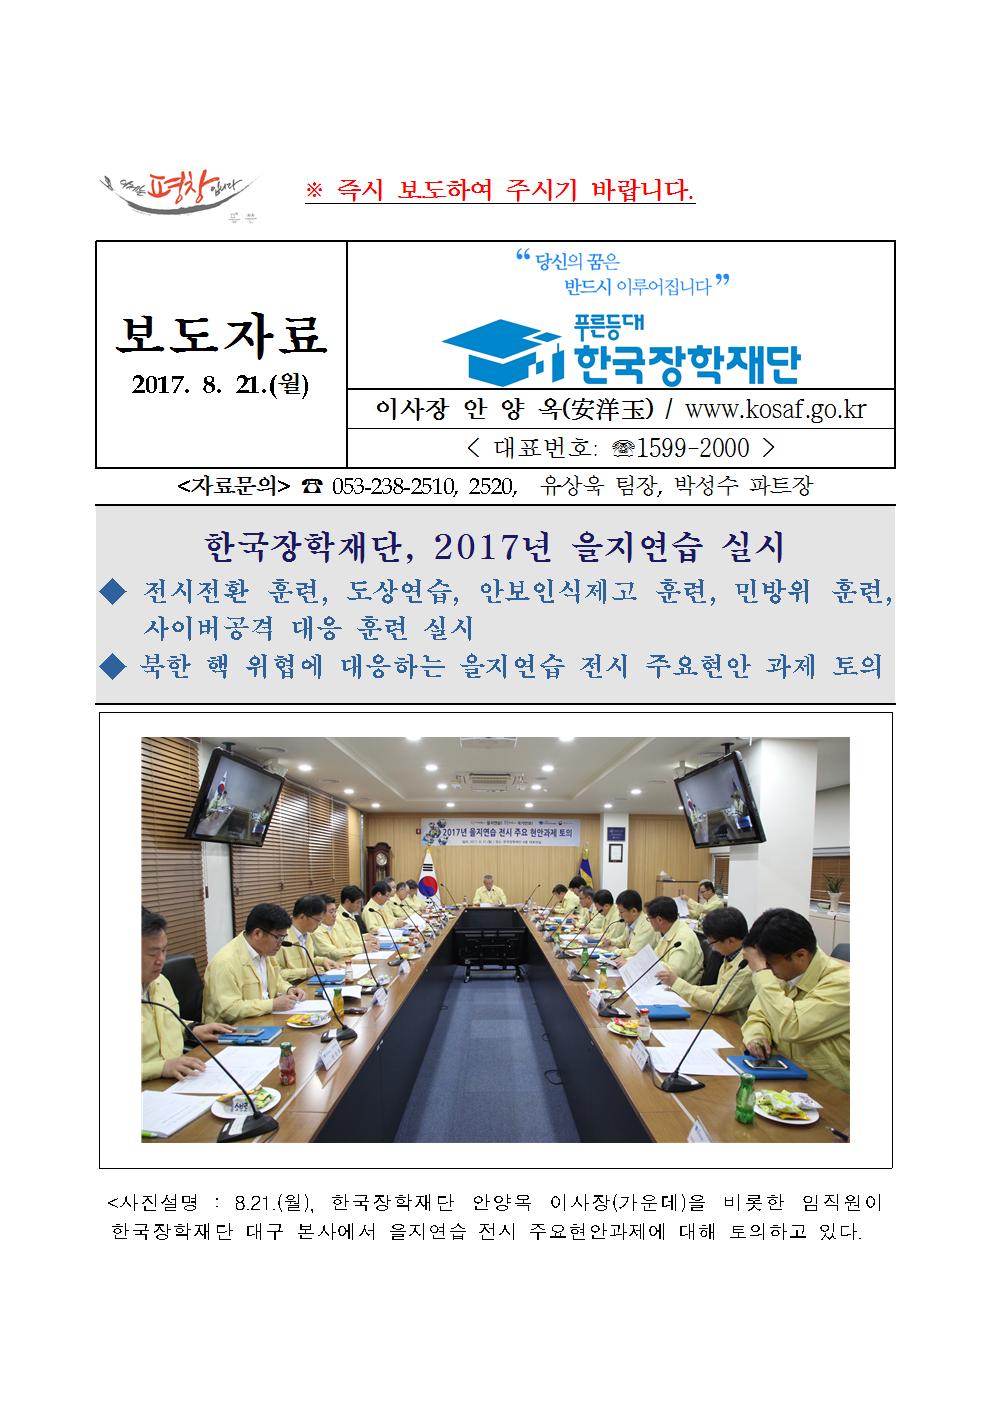 08-21(월)[보도자료] 한국장학재단, 2017년 을지연습 실시001.jpg